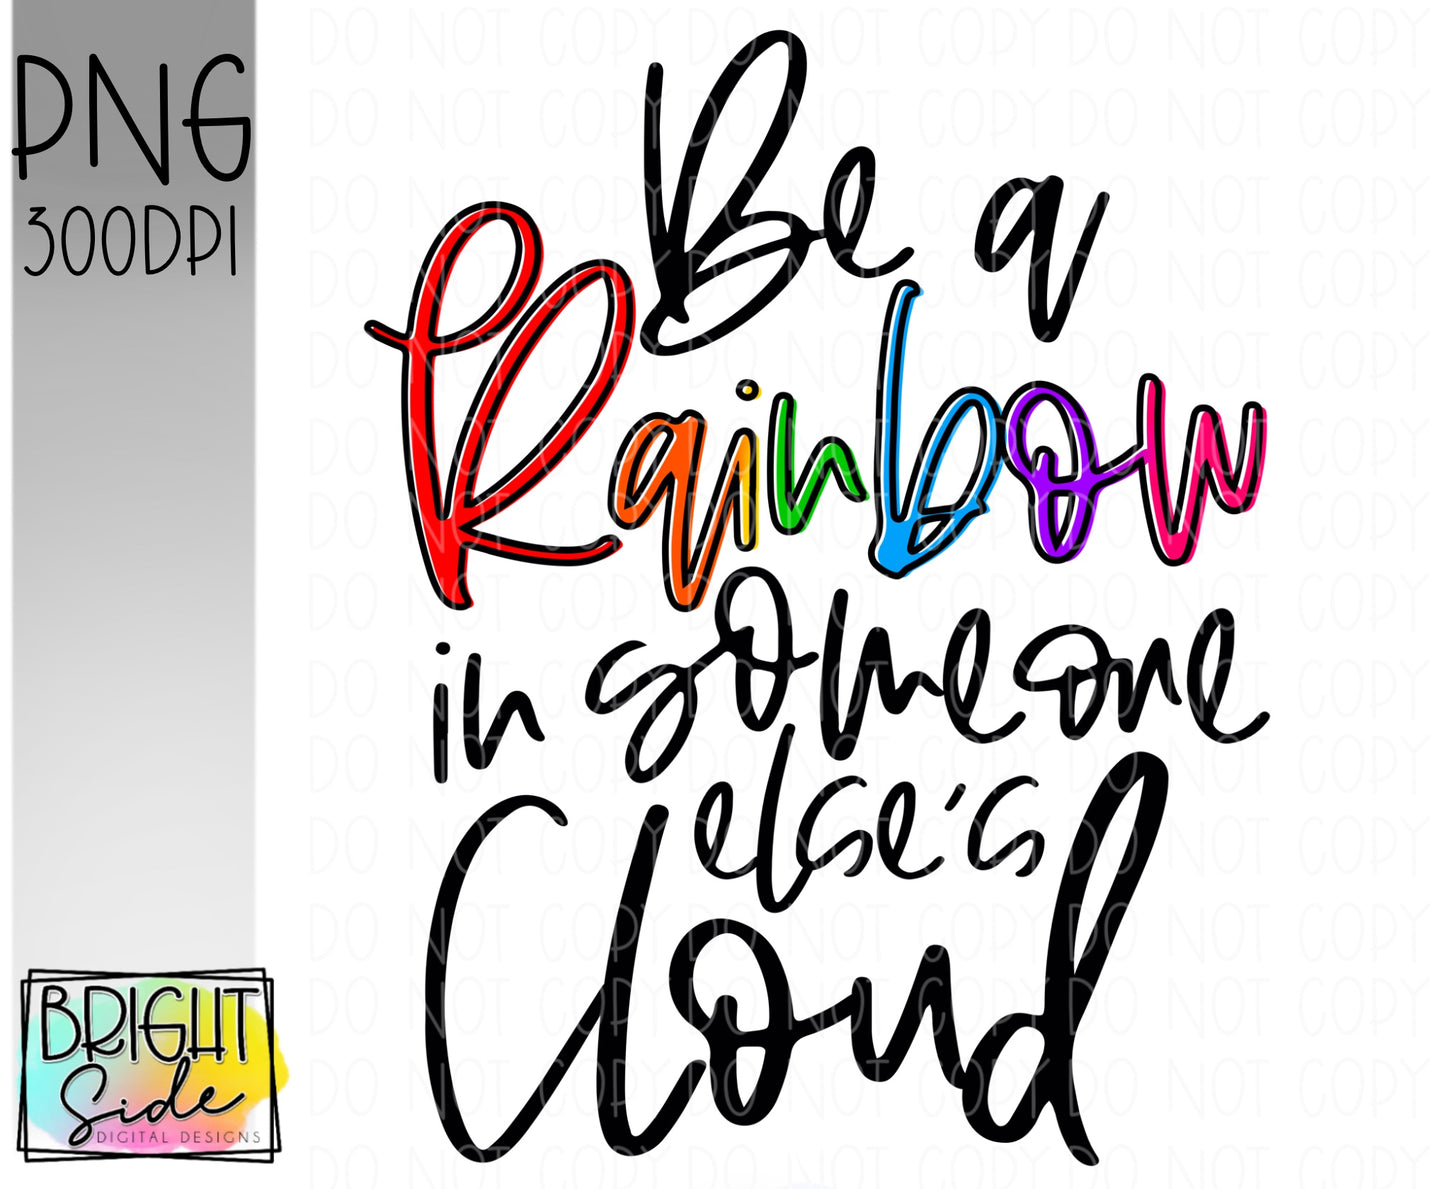 Be a rainbow